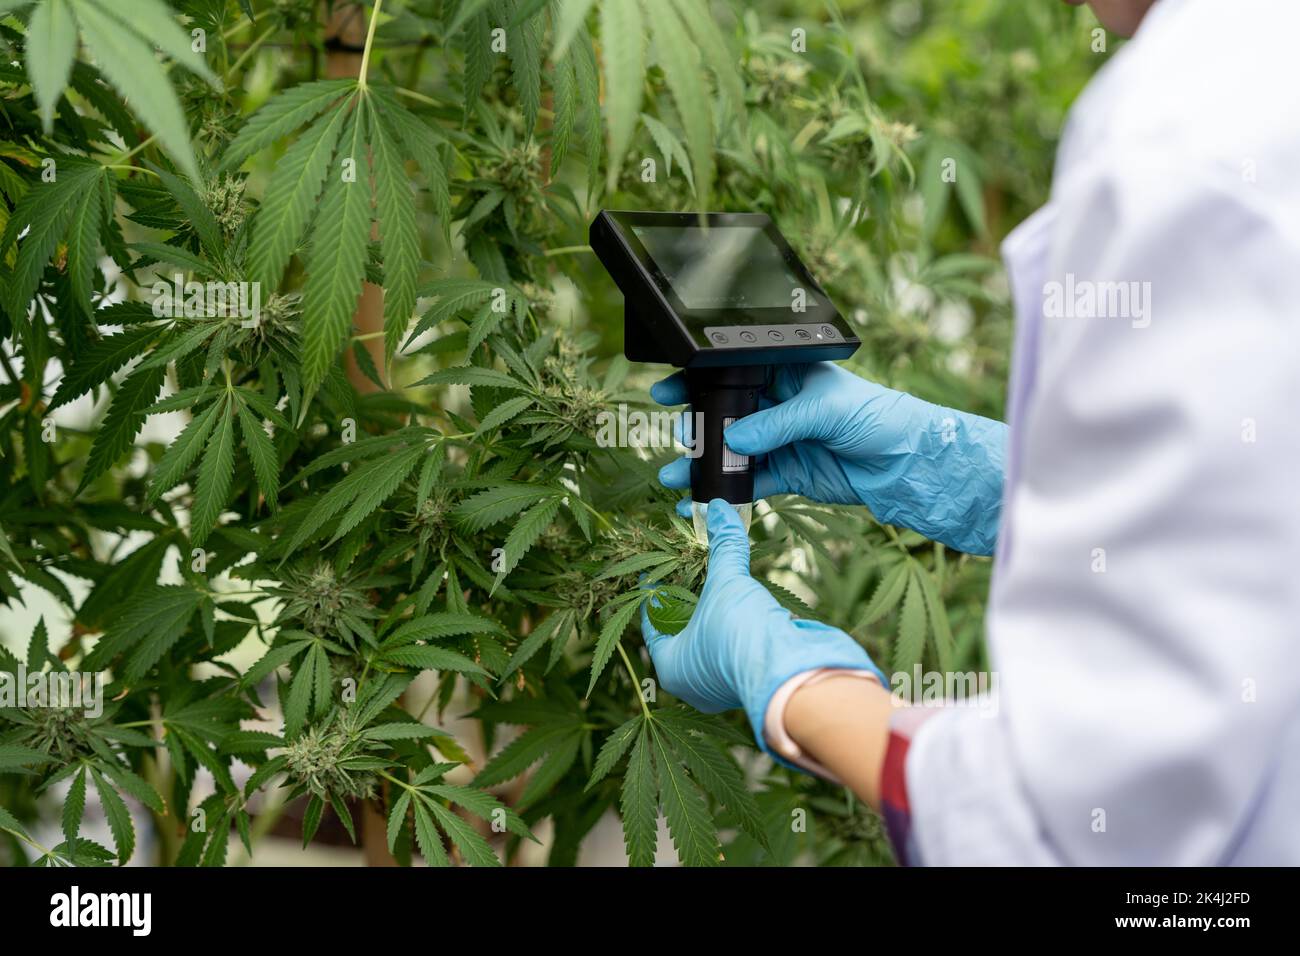 Wissenschaftler mit Maske überprüft Hanfpflanzen in einem Gewächshaus. Konzept der pflanzlichen Alternativmedizin, cbd-Öl, Pharmazeptische Industrie Stockfoto